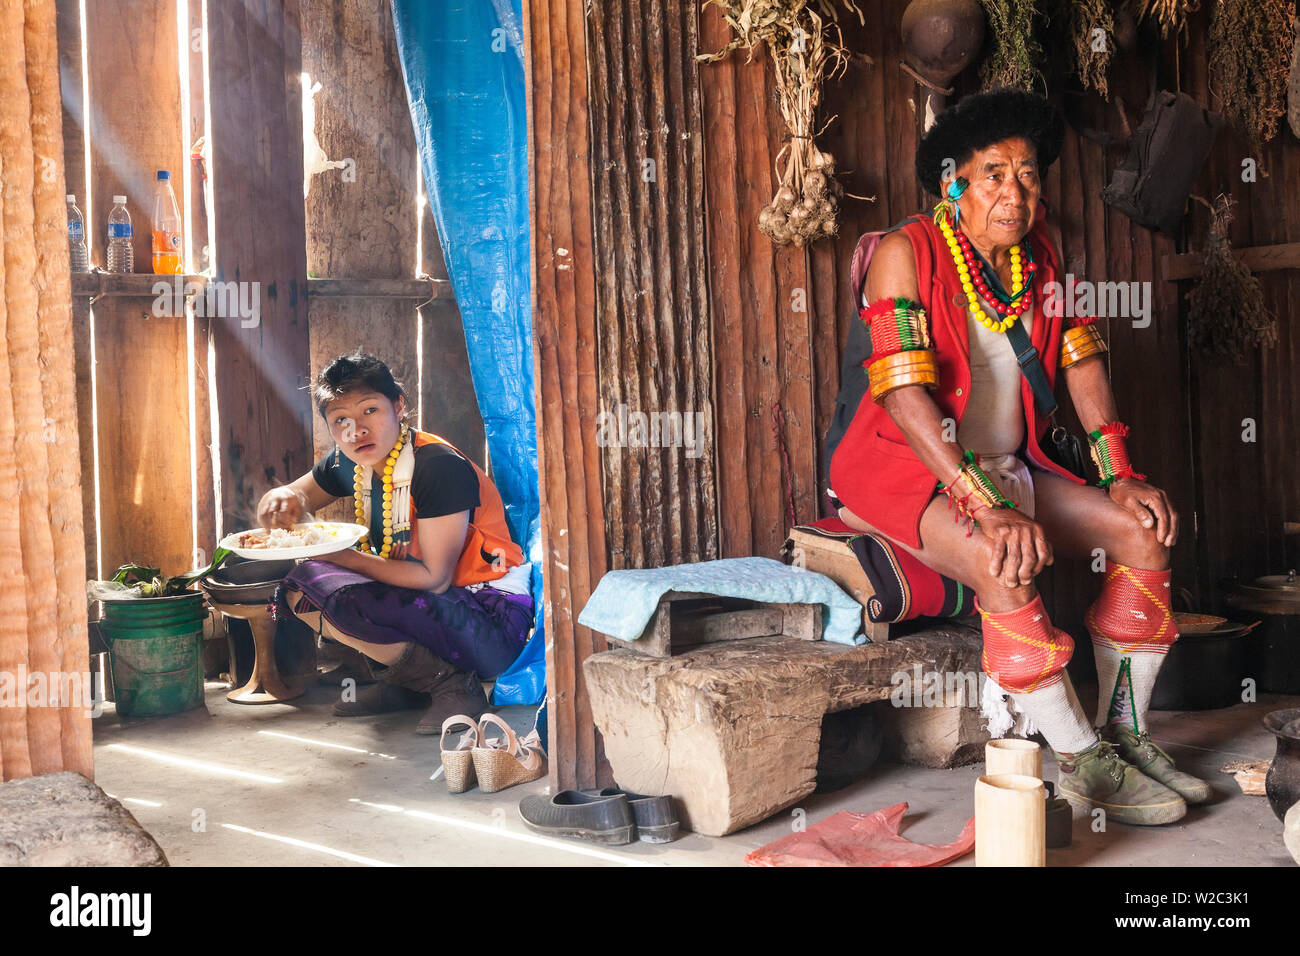 Chakhesang (tribu) dans la cuisine, Nagaland, nord-est de l'Inde Banque D'Images